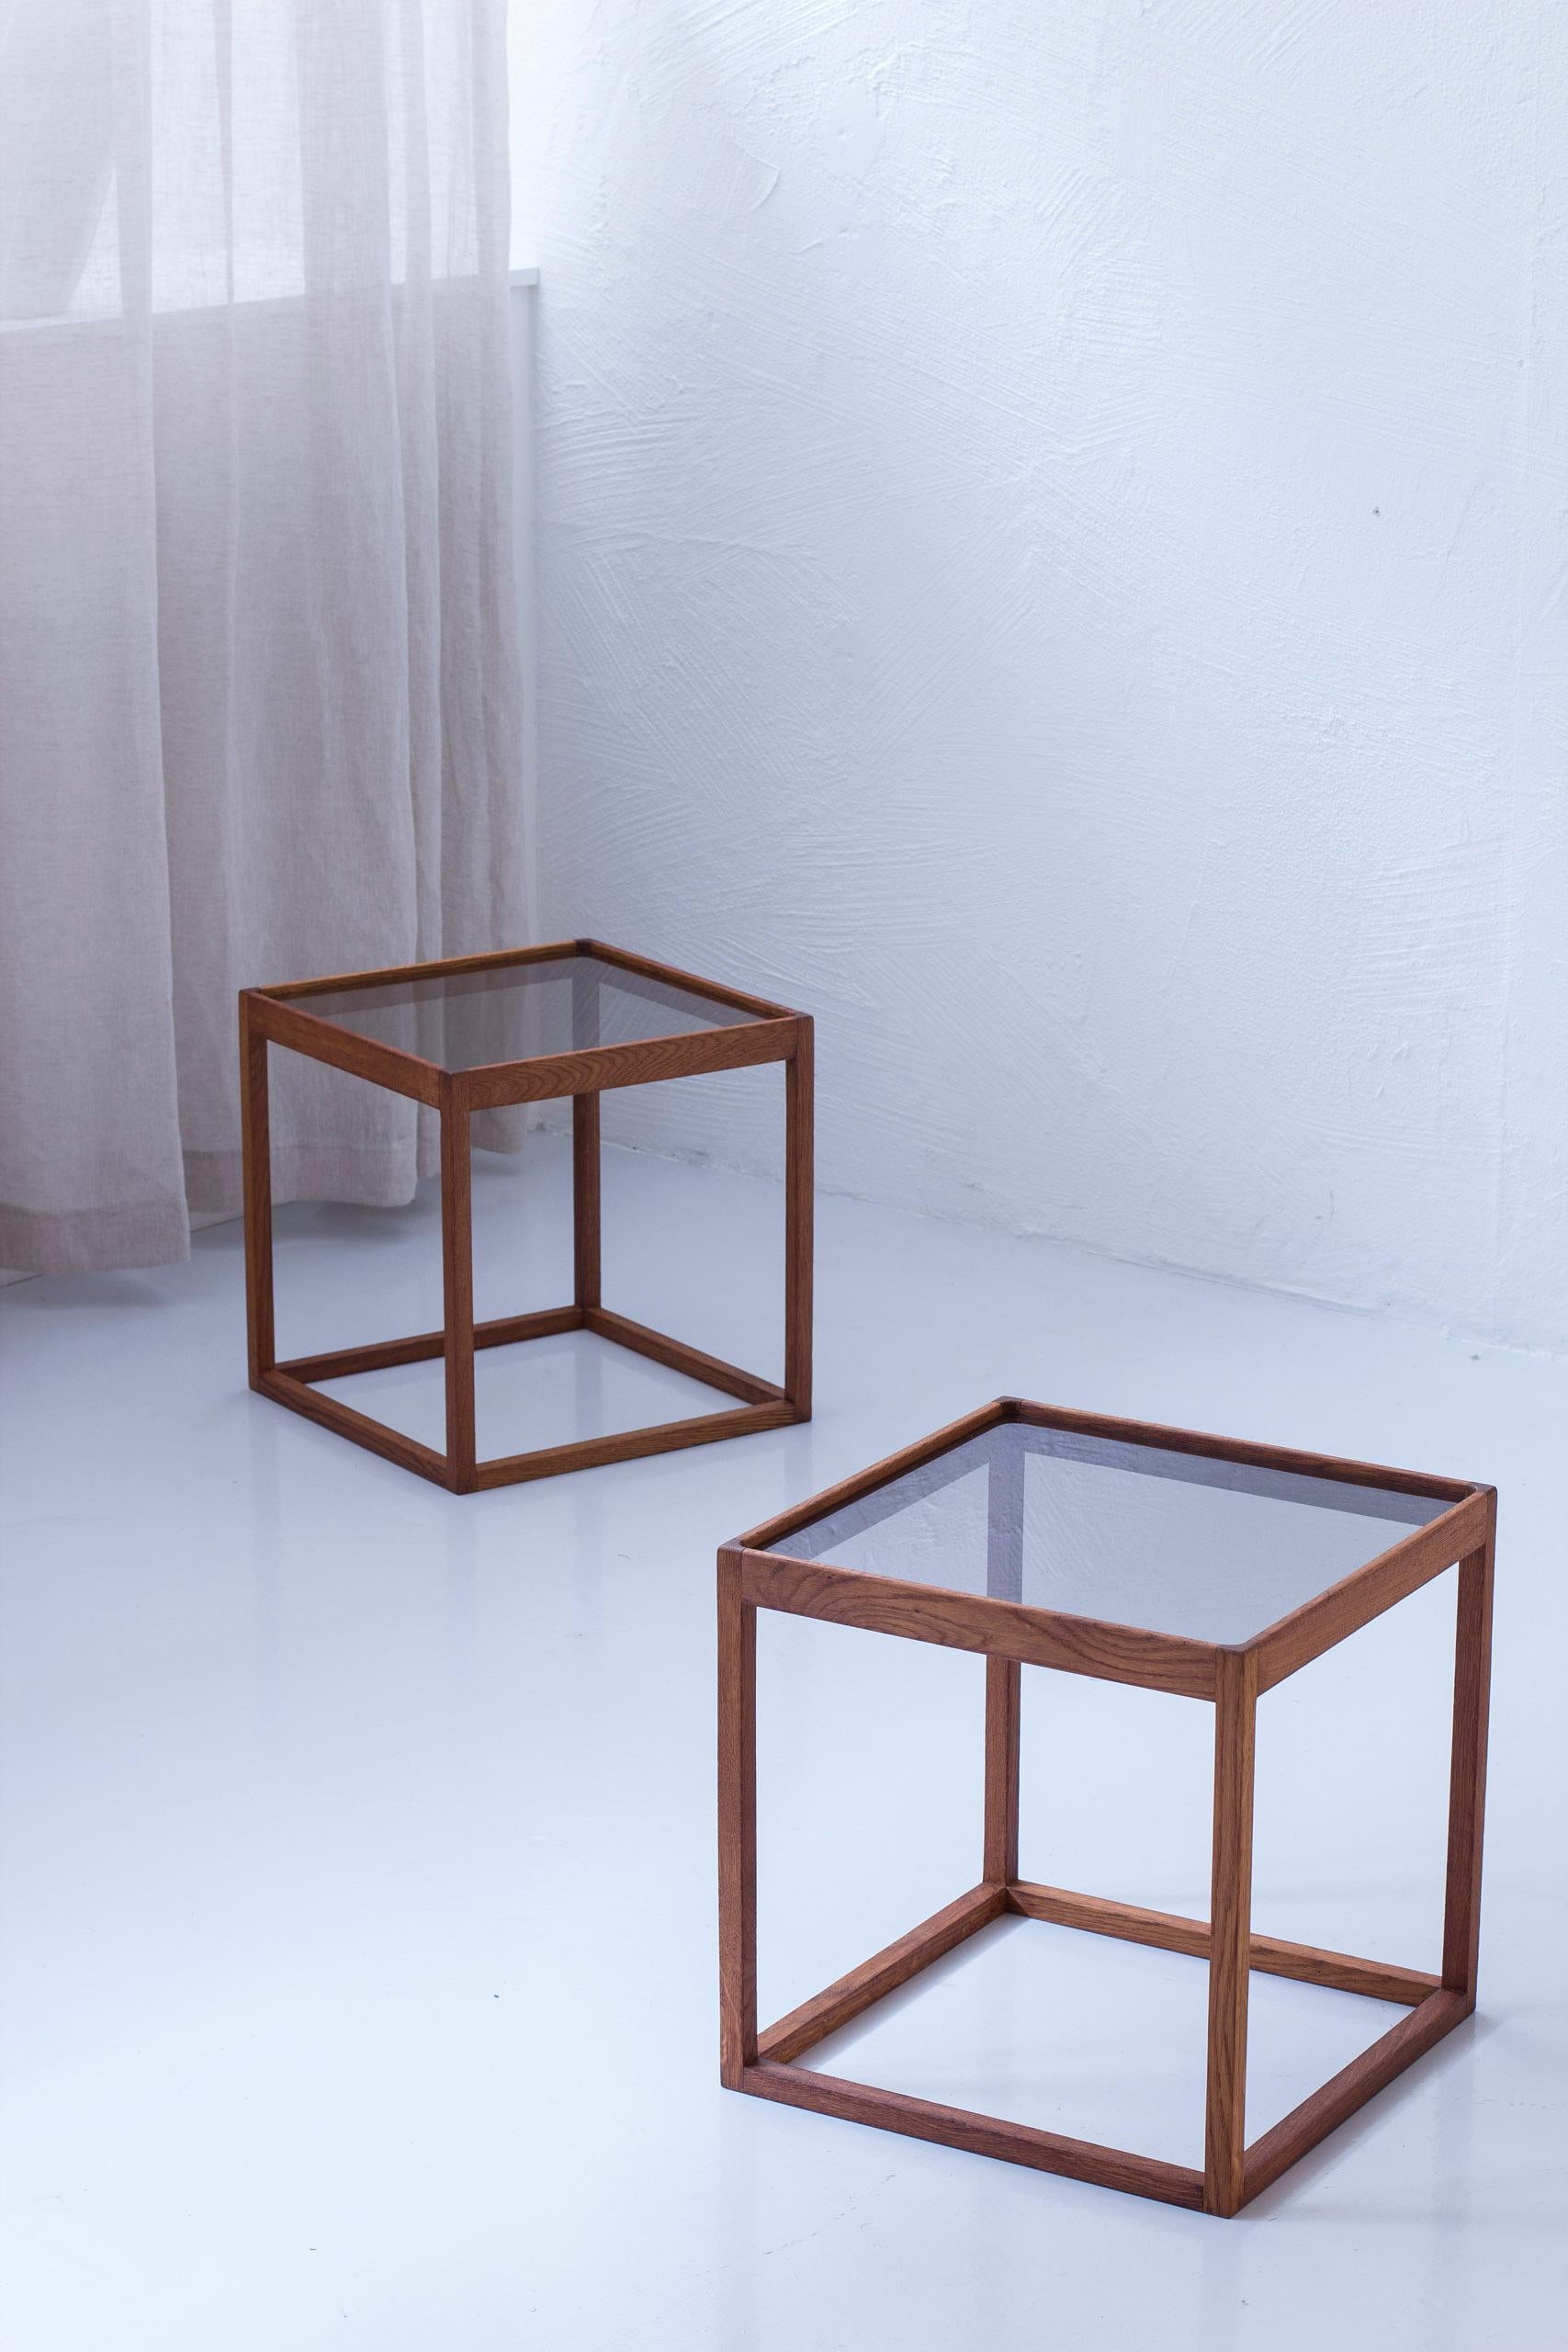 Table d'appoint Cube conçue par Kurt Østervig. Fabriquée au Danemark par KP Møbler dans les années 1960. Fabriqué en chêne massif avec des plateaux en verre d'origine de couleur fumée. Très bon état vintage avec de légers signes d'âge et